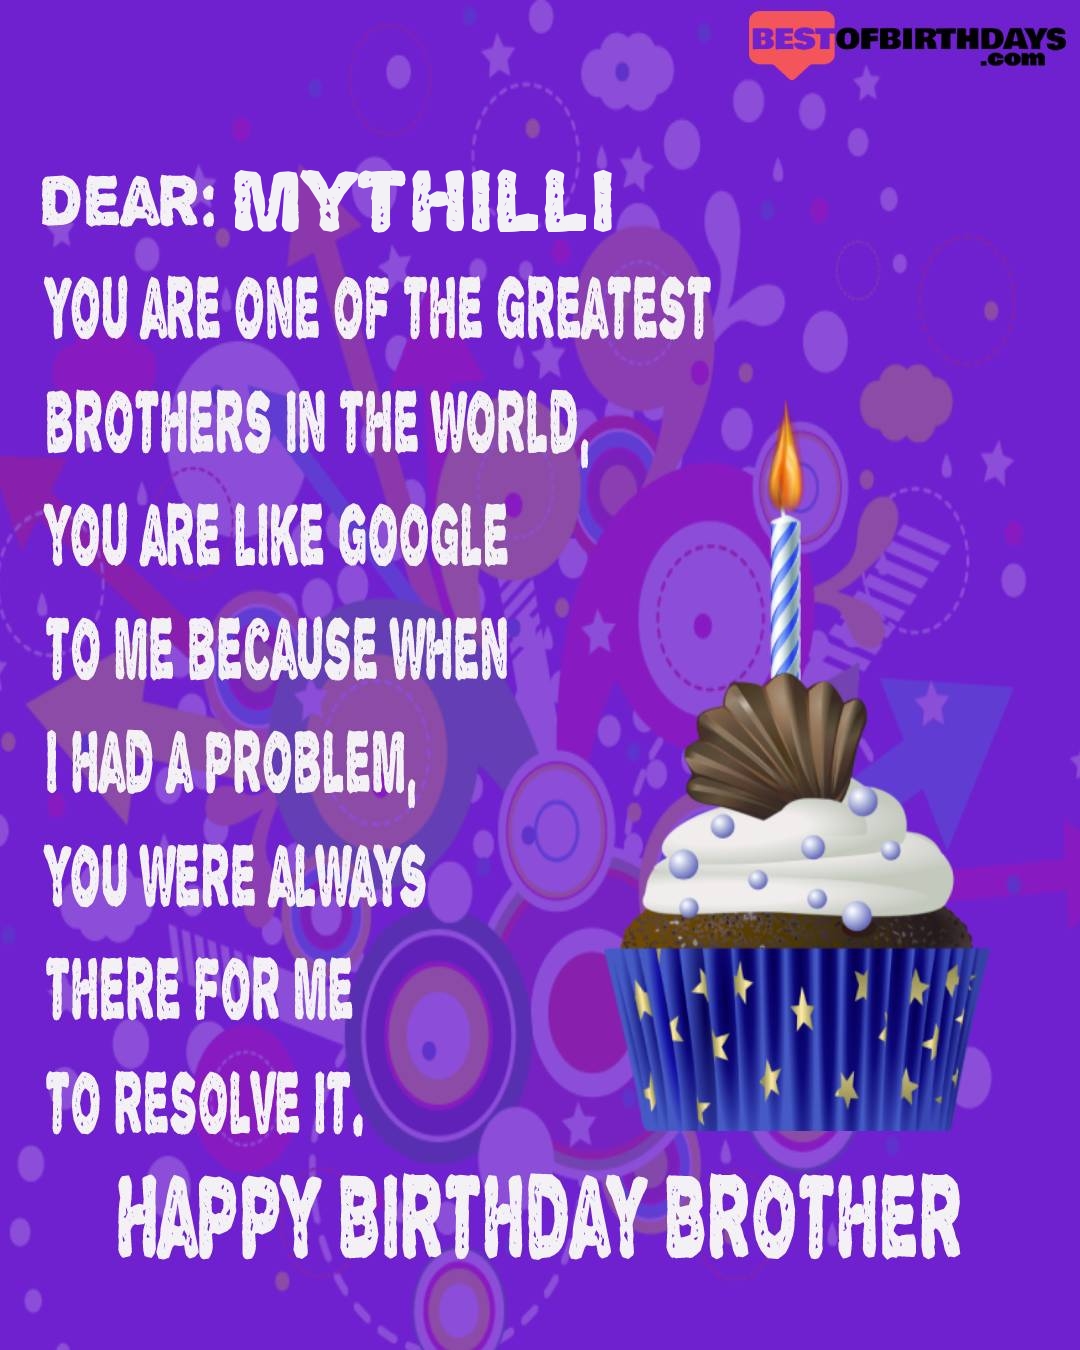 Happy birthday mythilli bhai brother bro